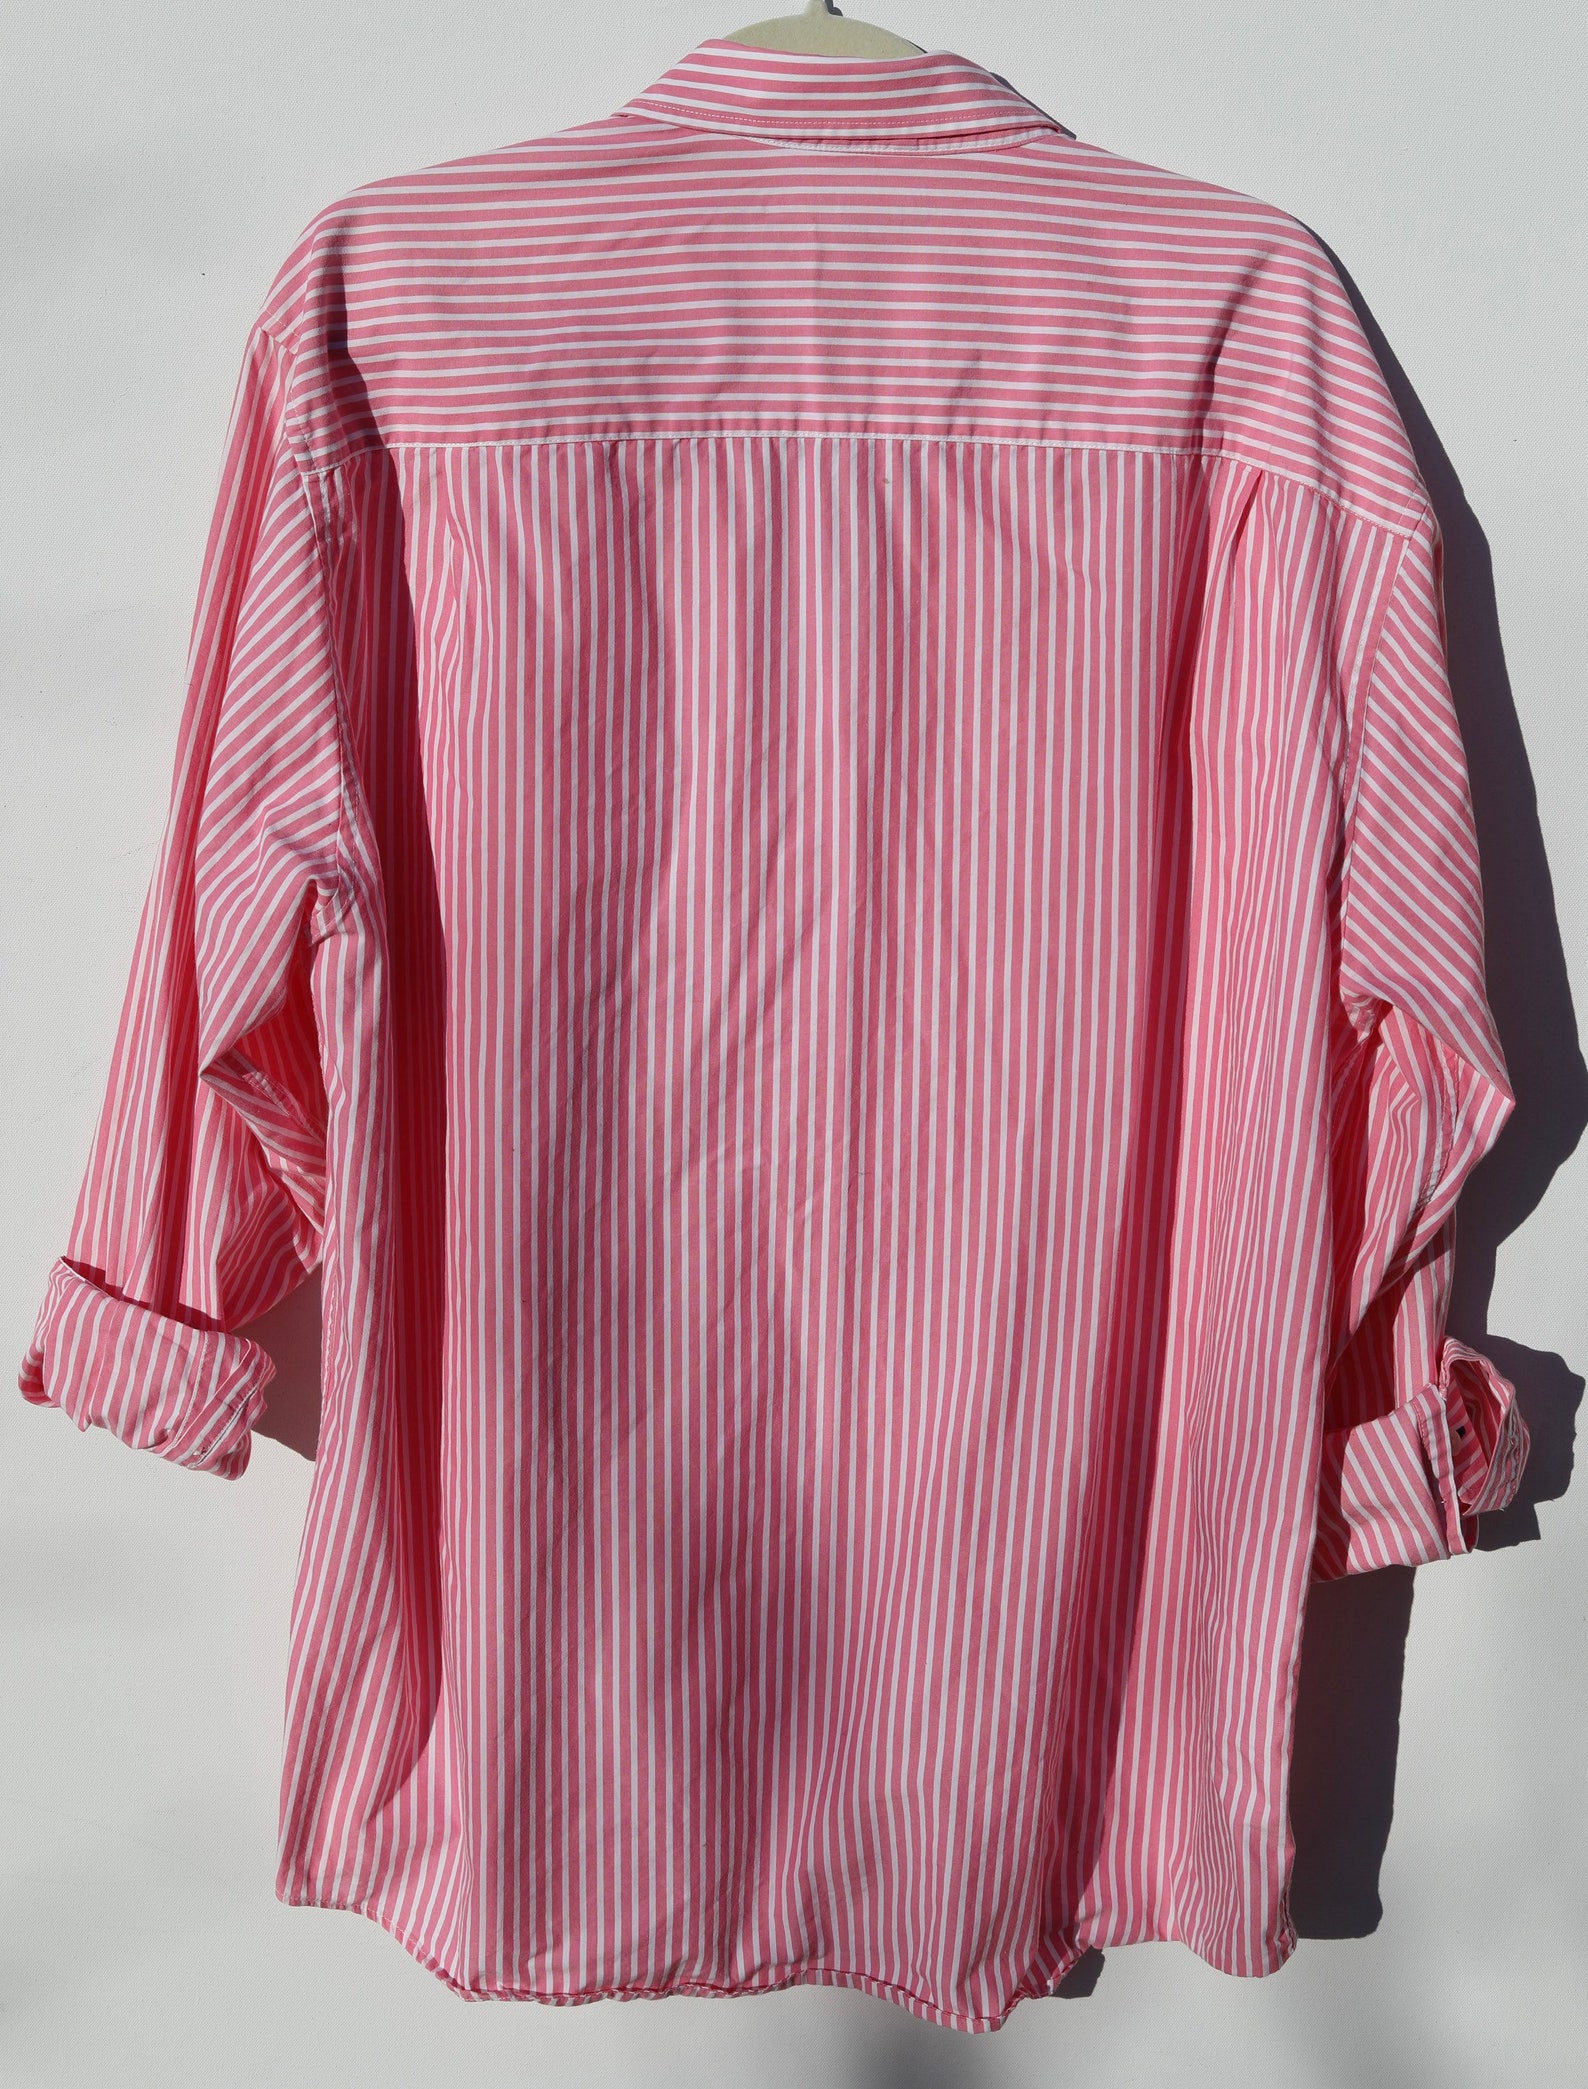 90s Style Pin Striped Pink White Button Down Boyfriend Shirt - Etsy